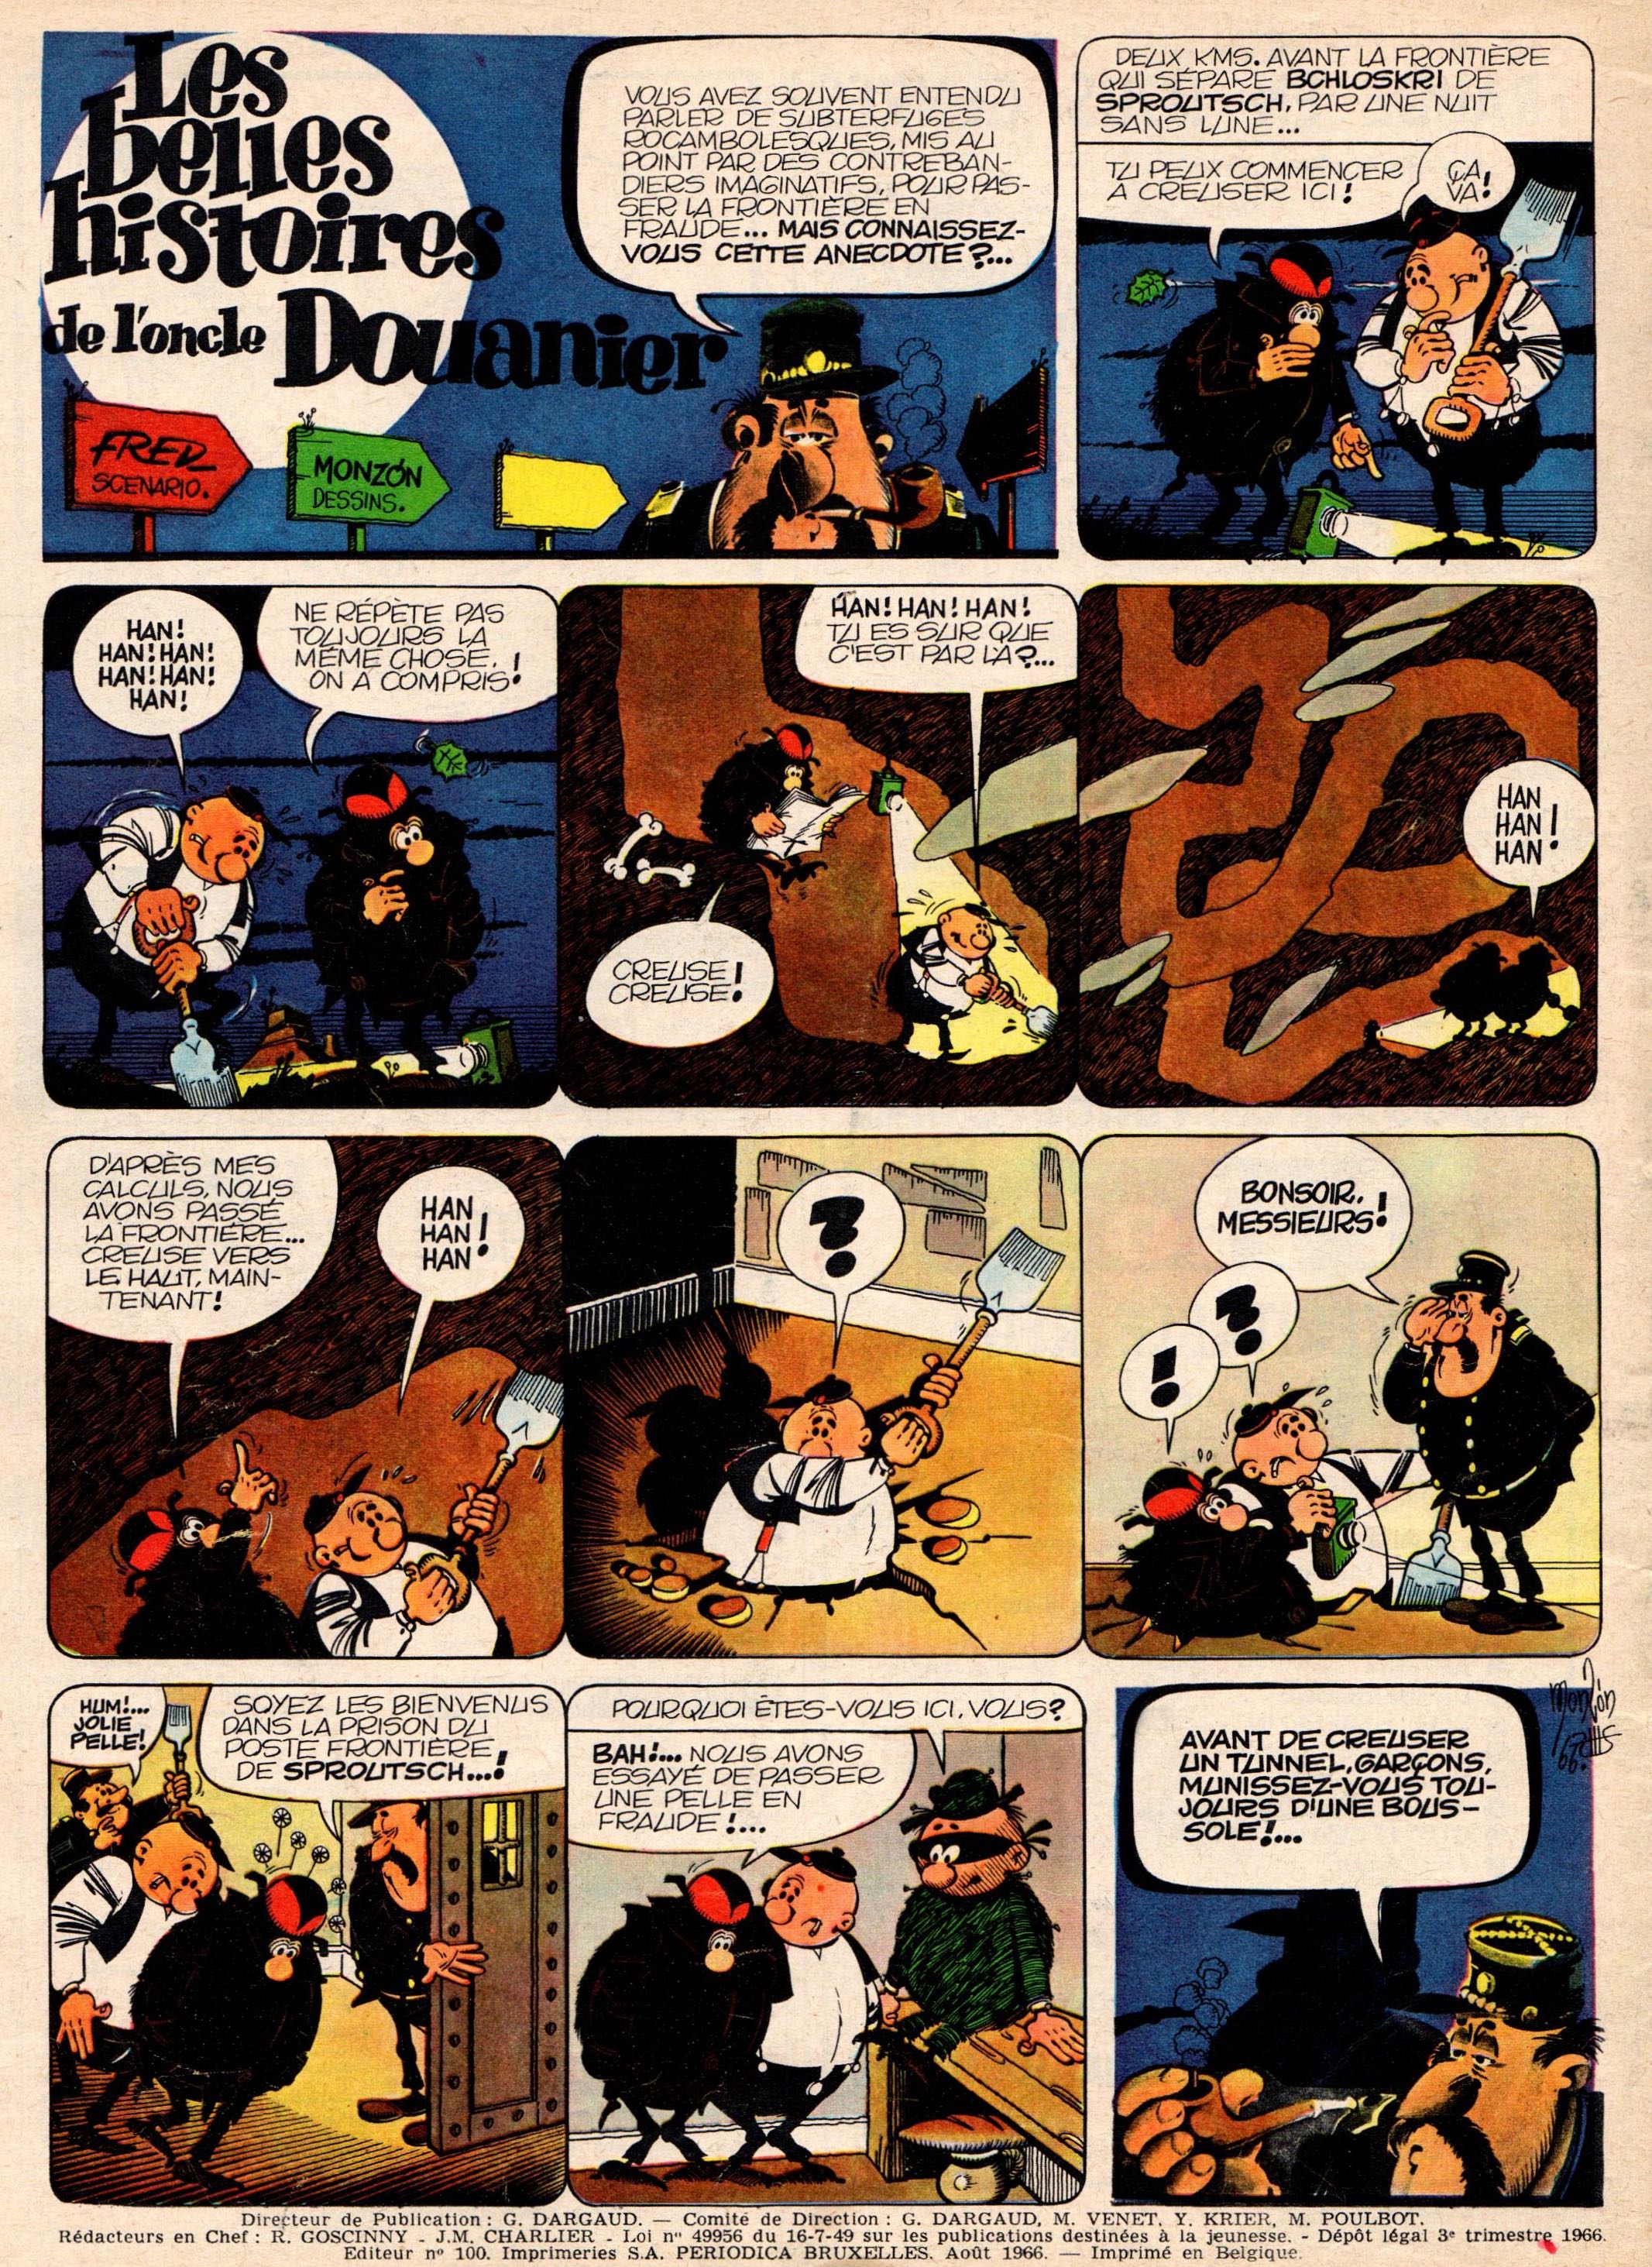 « Les Belles Histoires de l’oncle douanier » : une page scénarisée par Fred au n° 357 de Pilote, en 1966.